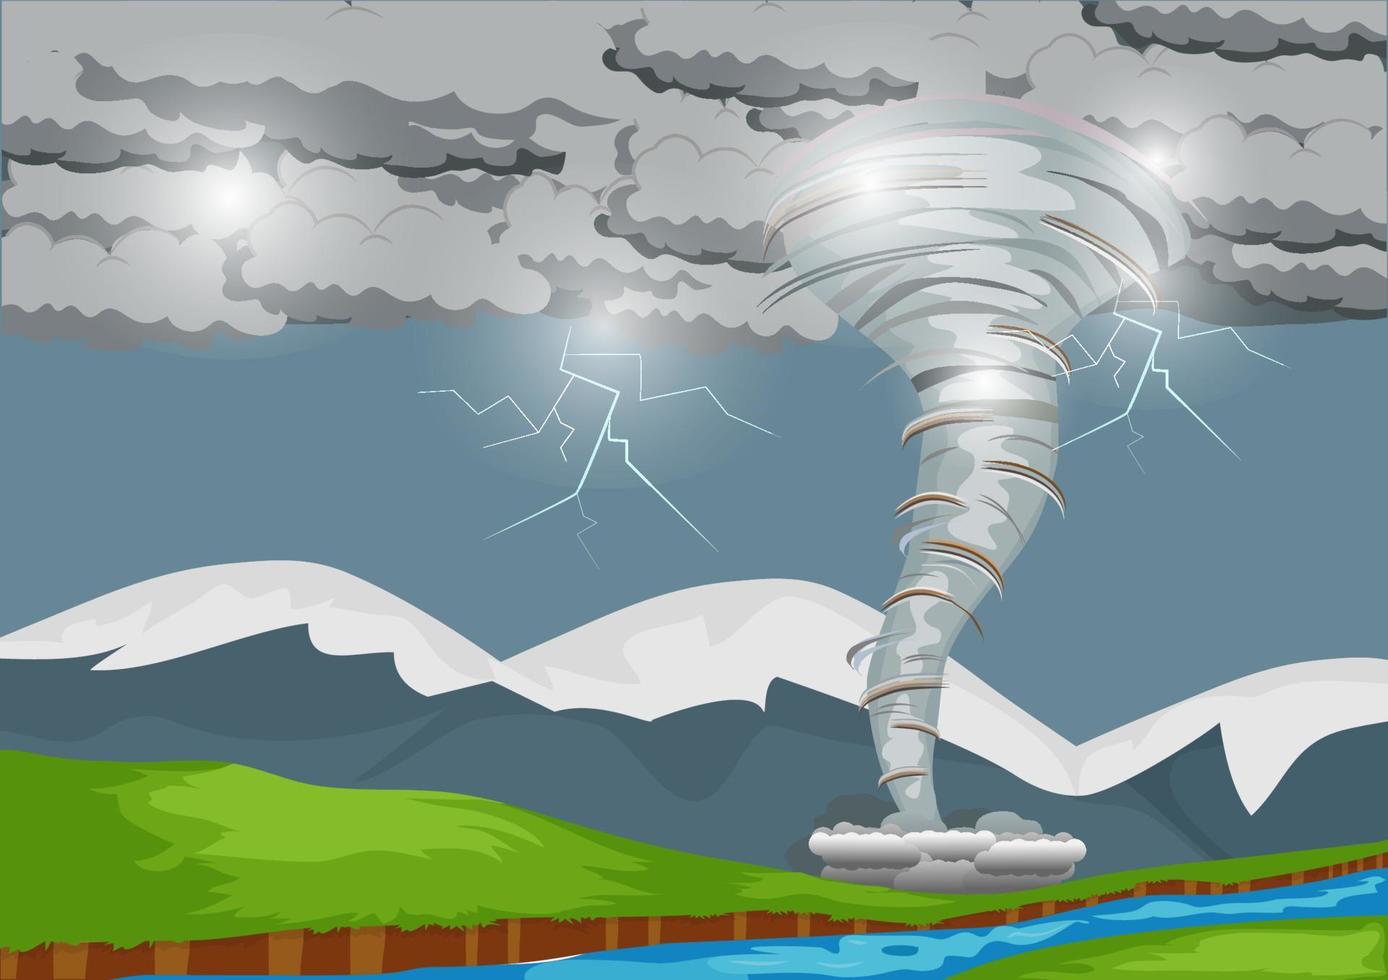 una forte tempesta produce un potente tornado che spazza la campagna con fulmini. illustrazione del paesaggio di tecnica mista vettore